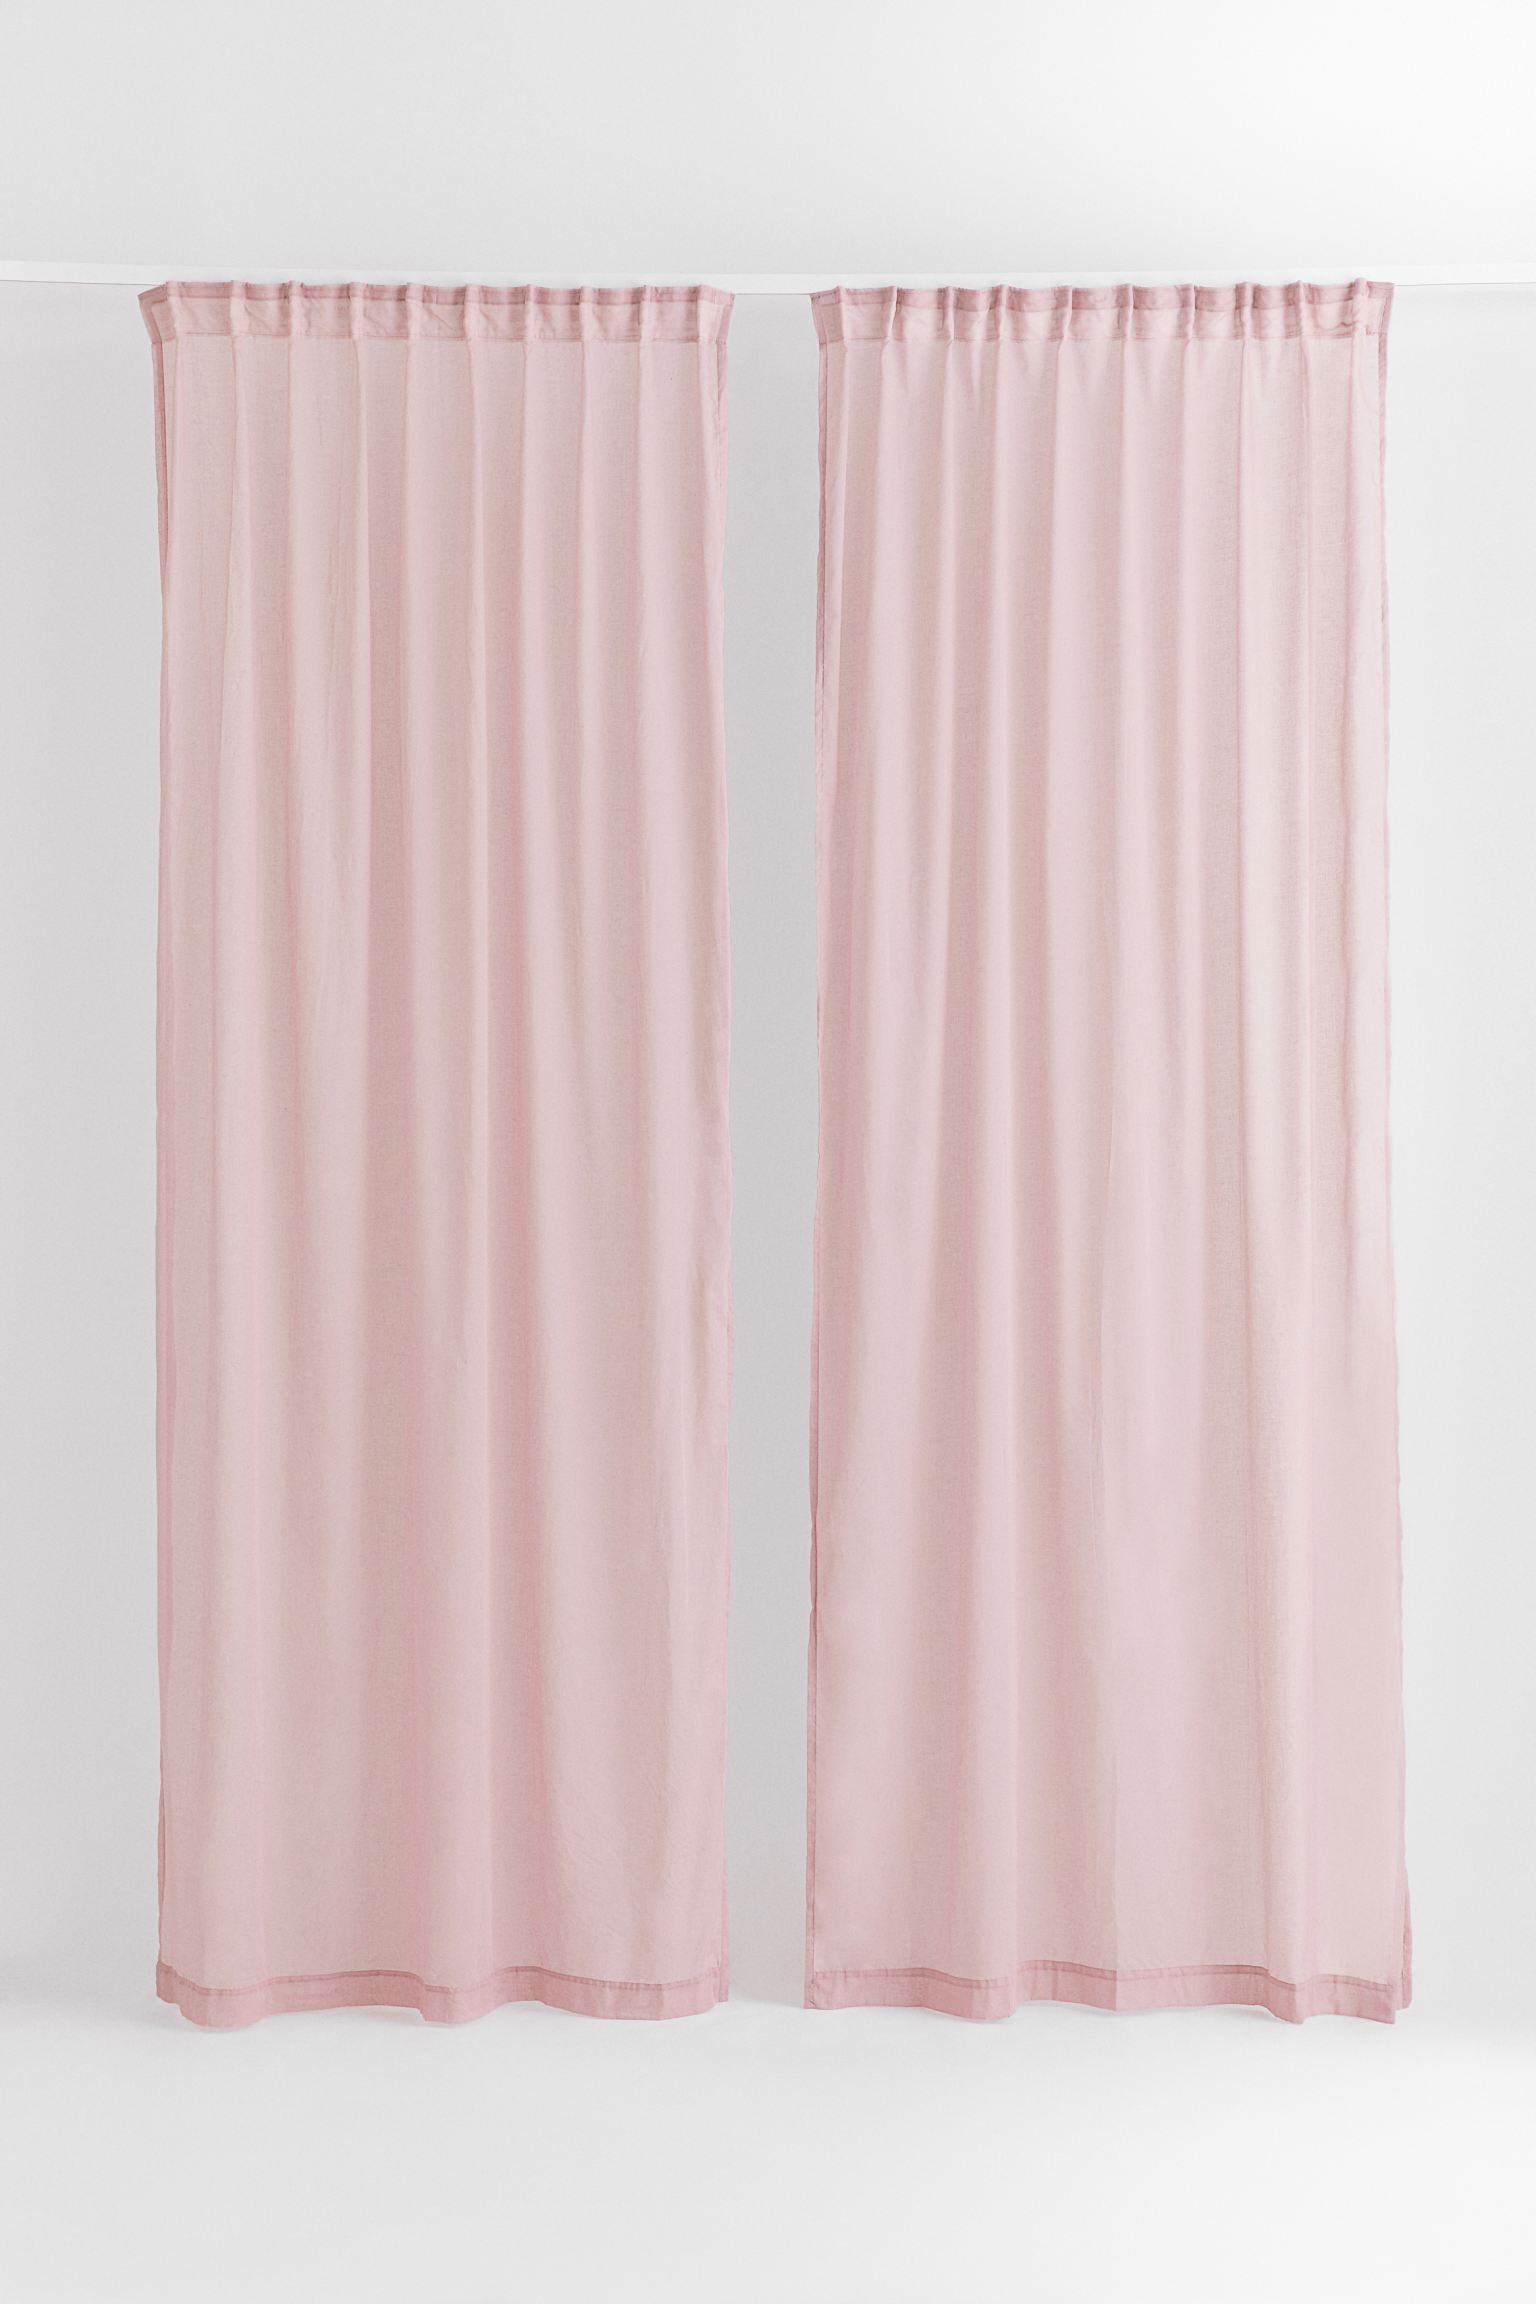 H&M Home Легка багатофункціональна штора, 2 шт., Пудрово-рожевий, 120x250 1038735003 1038735003